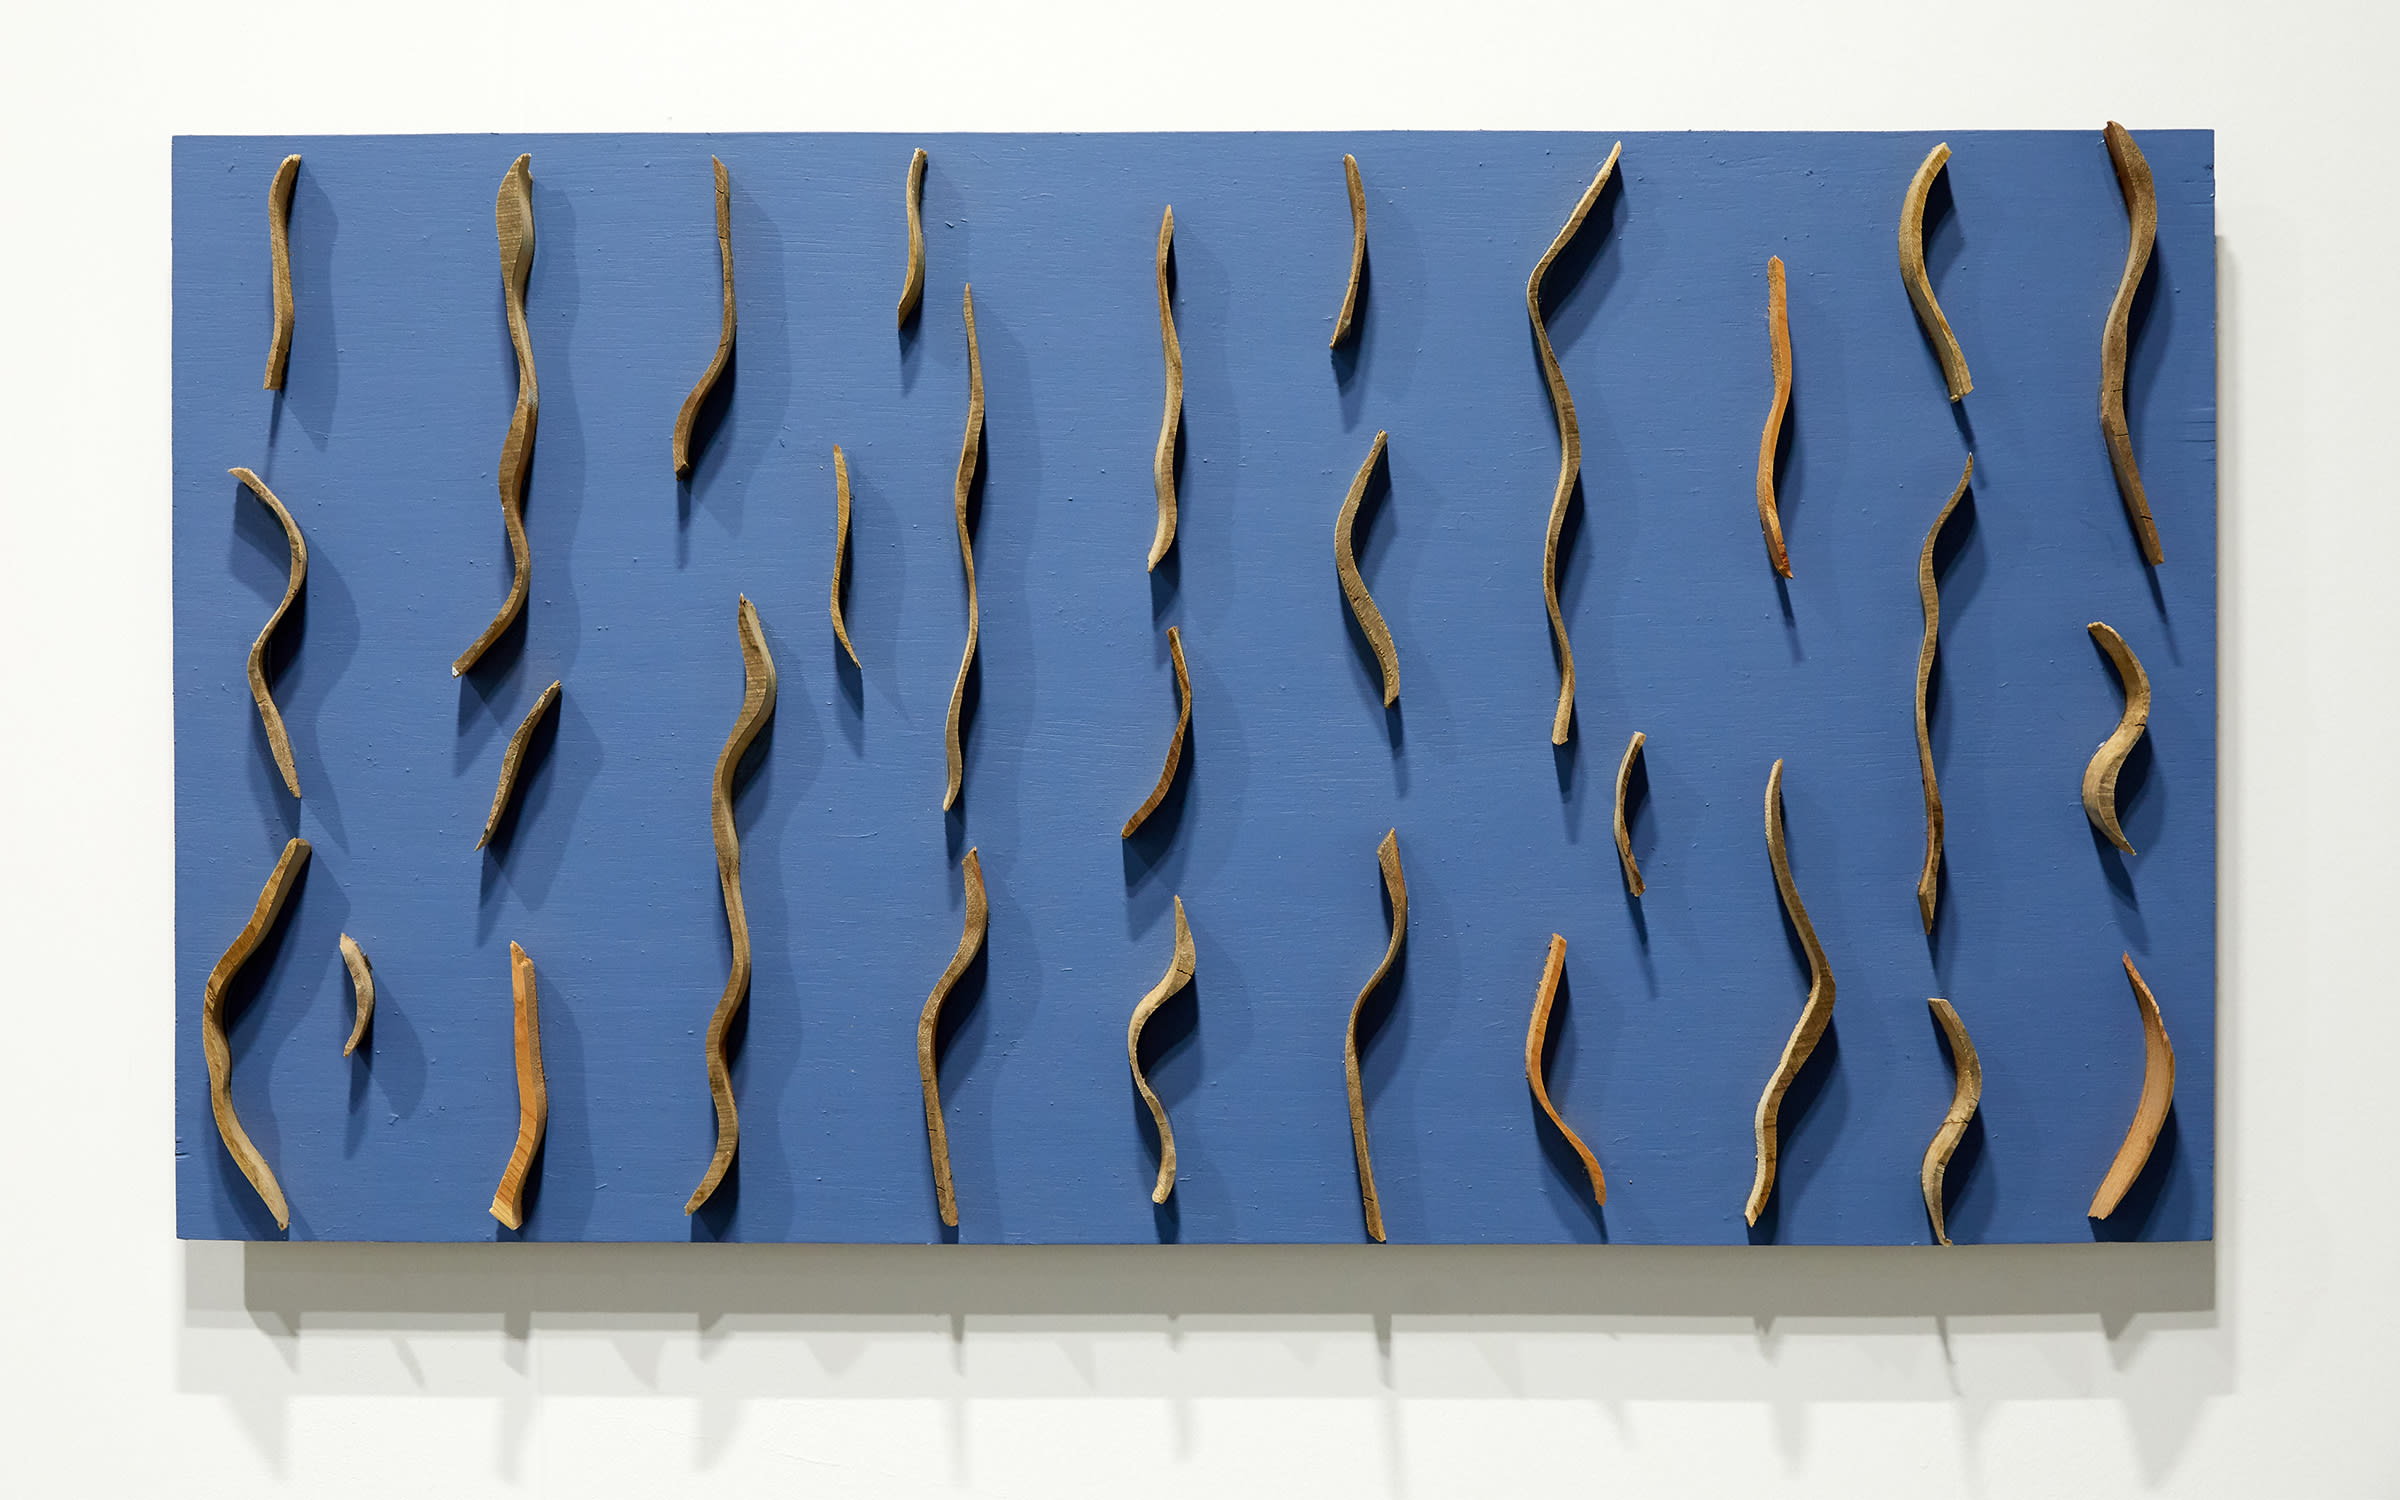 Kishio Suga, Lines Wall, 2002, presented by Tokyo Gallery + BTAP at Art Basel Hong Kong 2019.